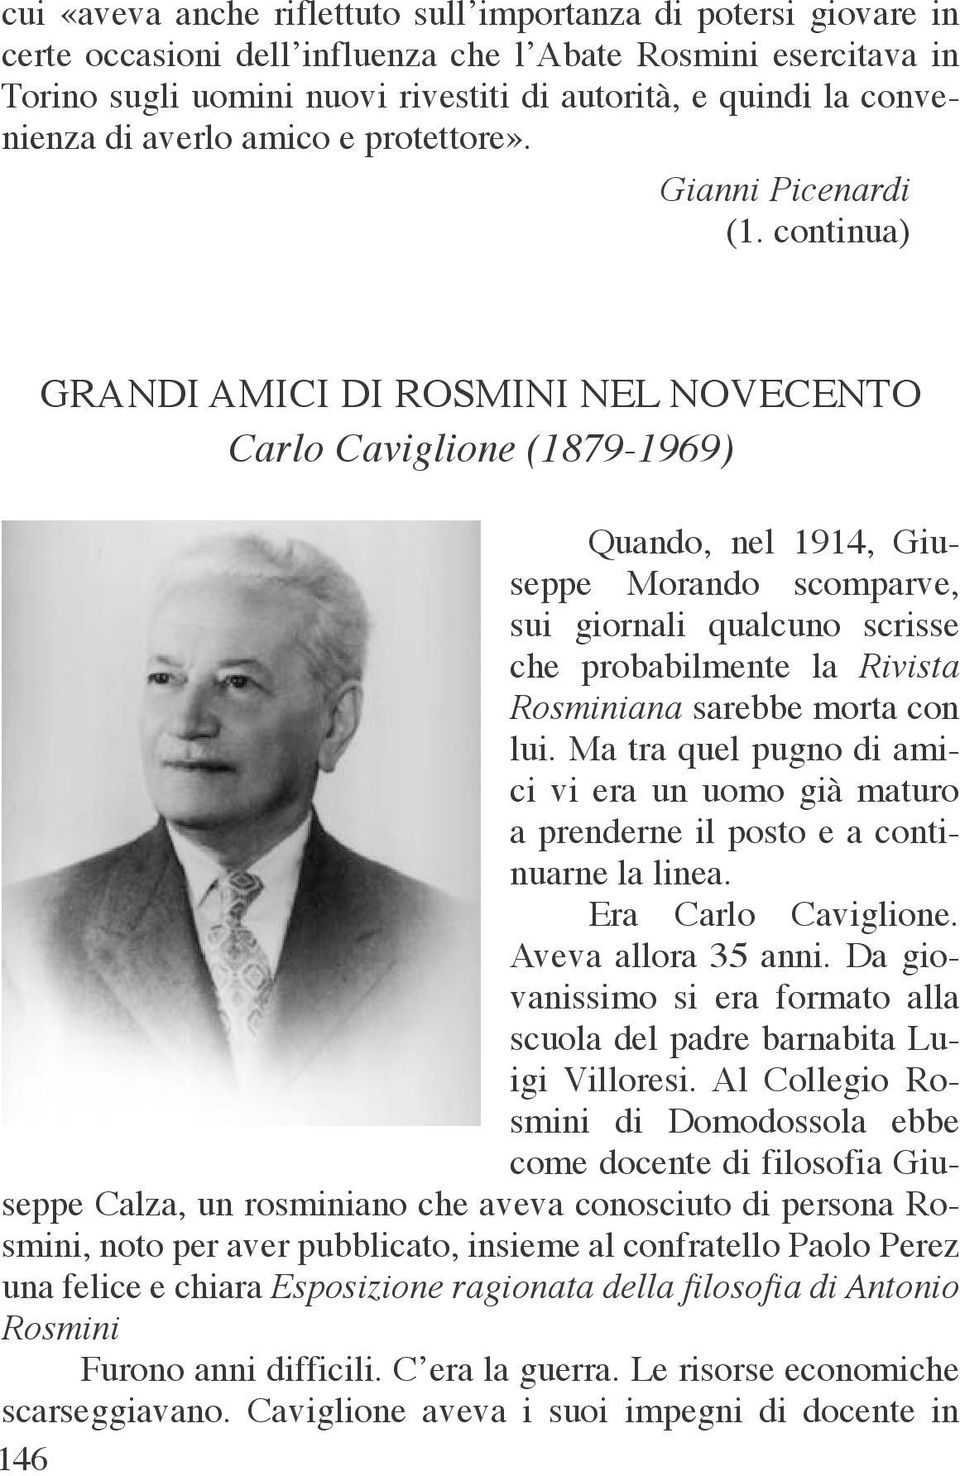 continua) GRANDI AMICI DI ROSMINI NEL NOVECENTO Carlo Caviglione (1879-1969) Quando, nel 1914, Giuseppe Morando scomparve, sui giornali qualcuno scrisse che probabilmente la Rivista Rosminiana